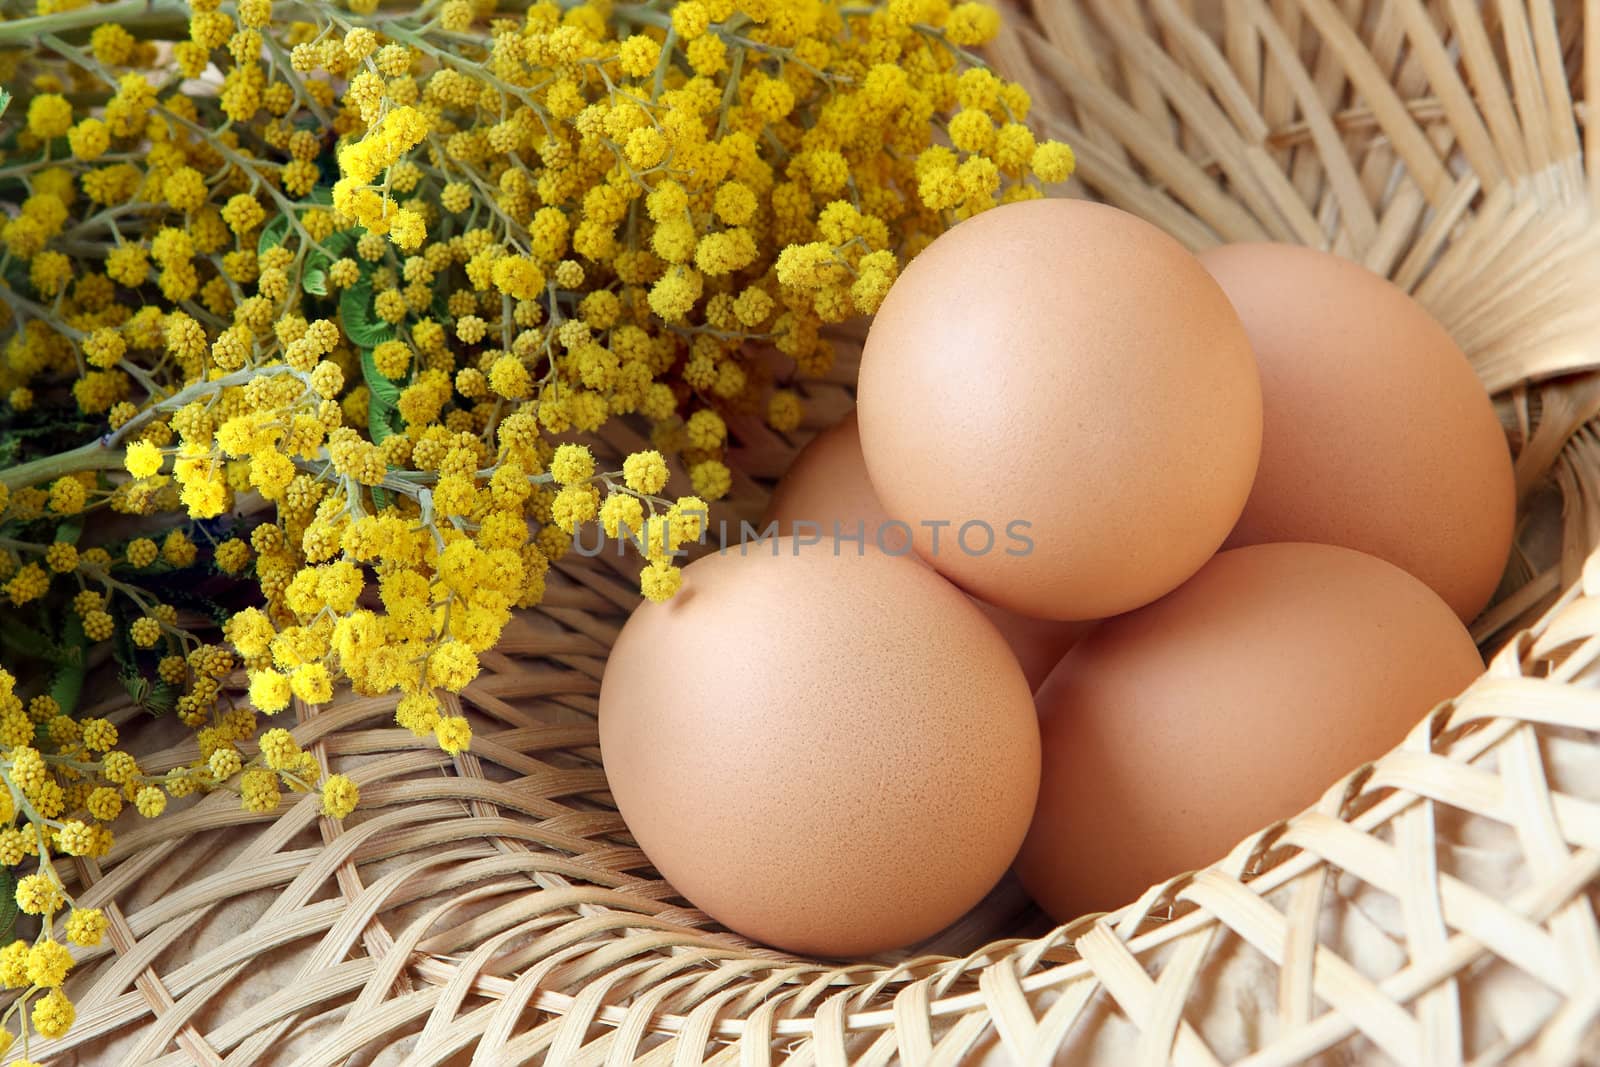 Eggs in basket by pozitivstudija